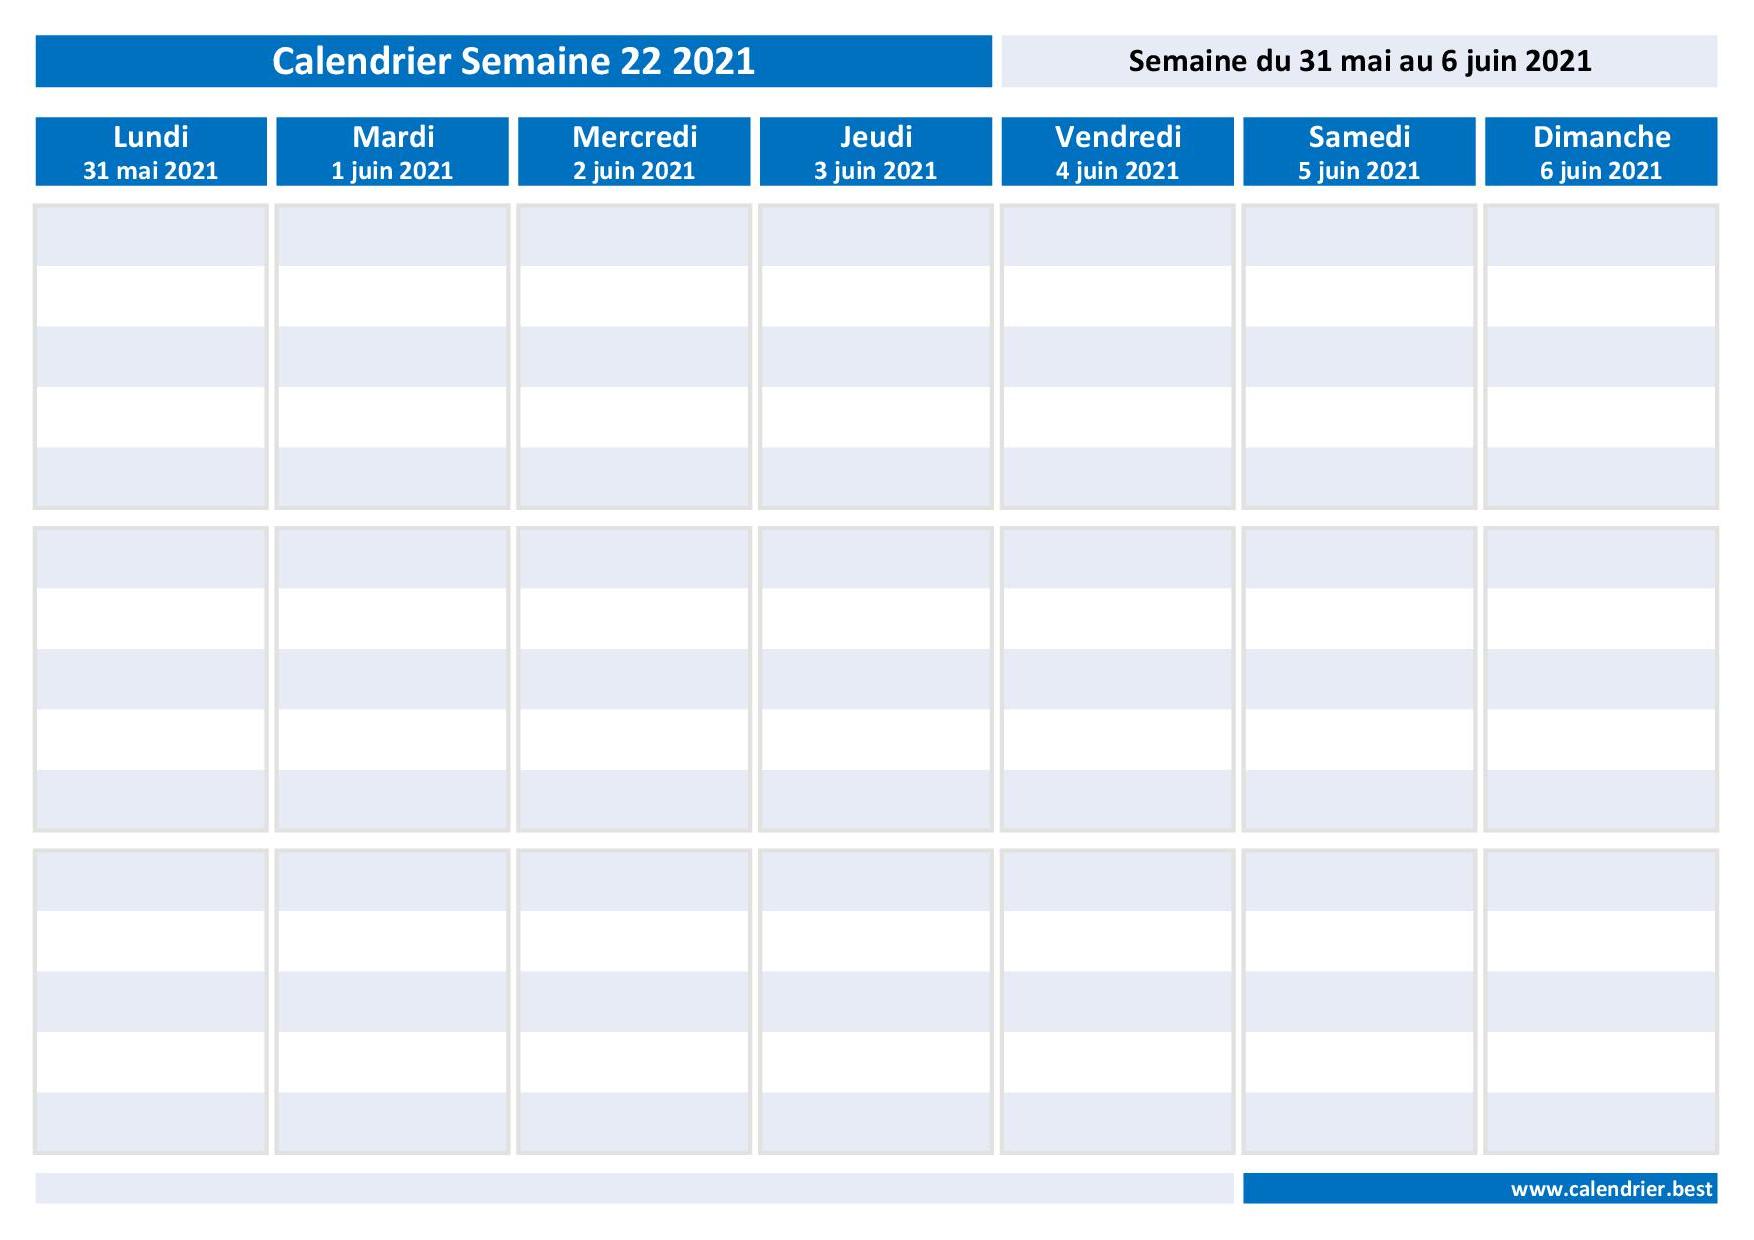 Semaine 22 2021 : dates, calendrier et planning hebdomadaire à imprimer